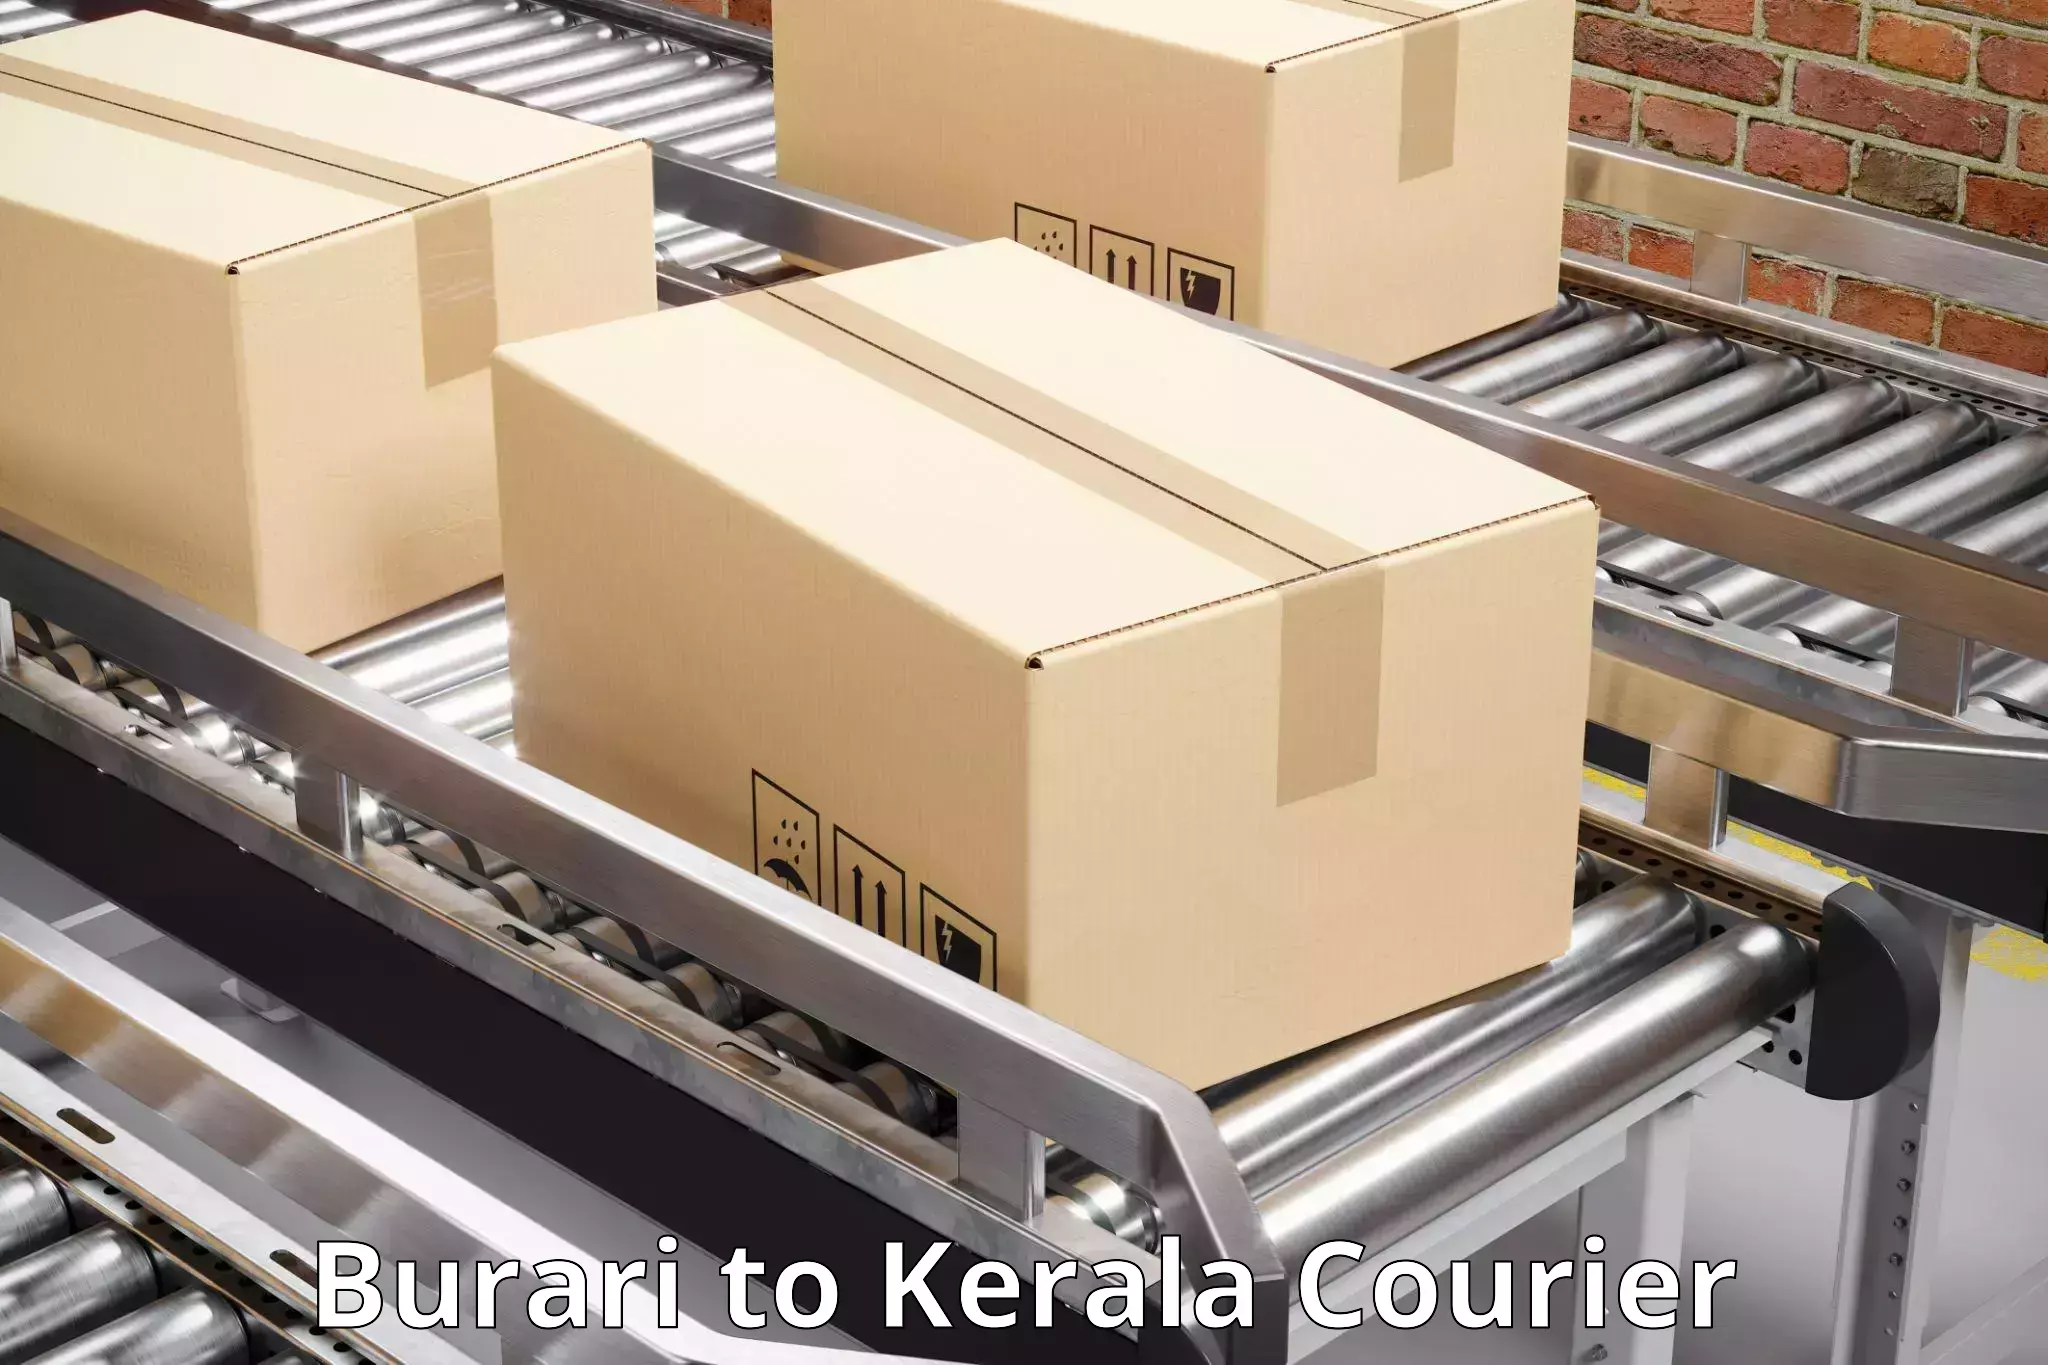 Customer-centric shipping Burari to Kakkur